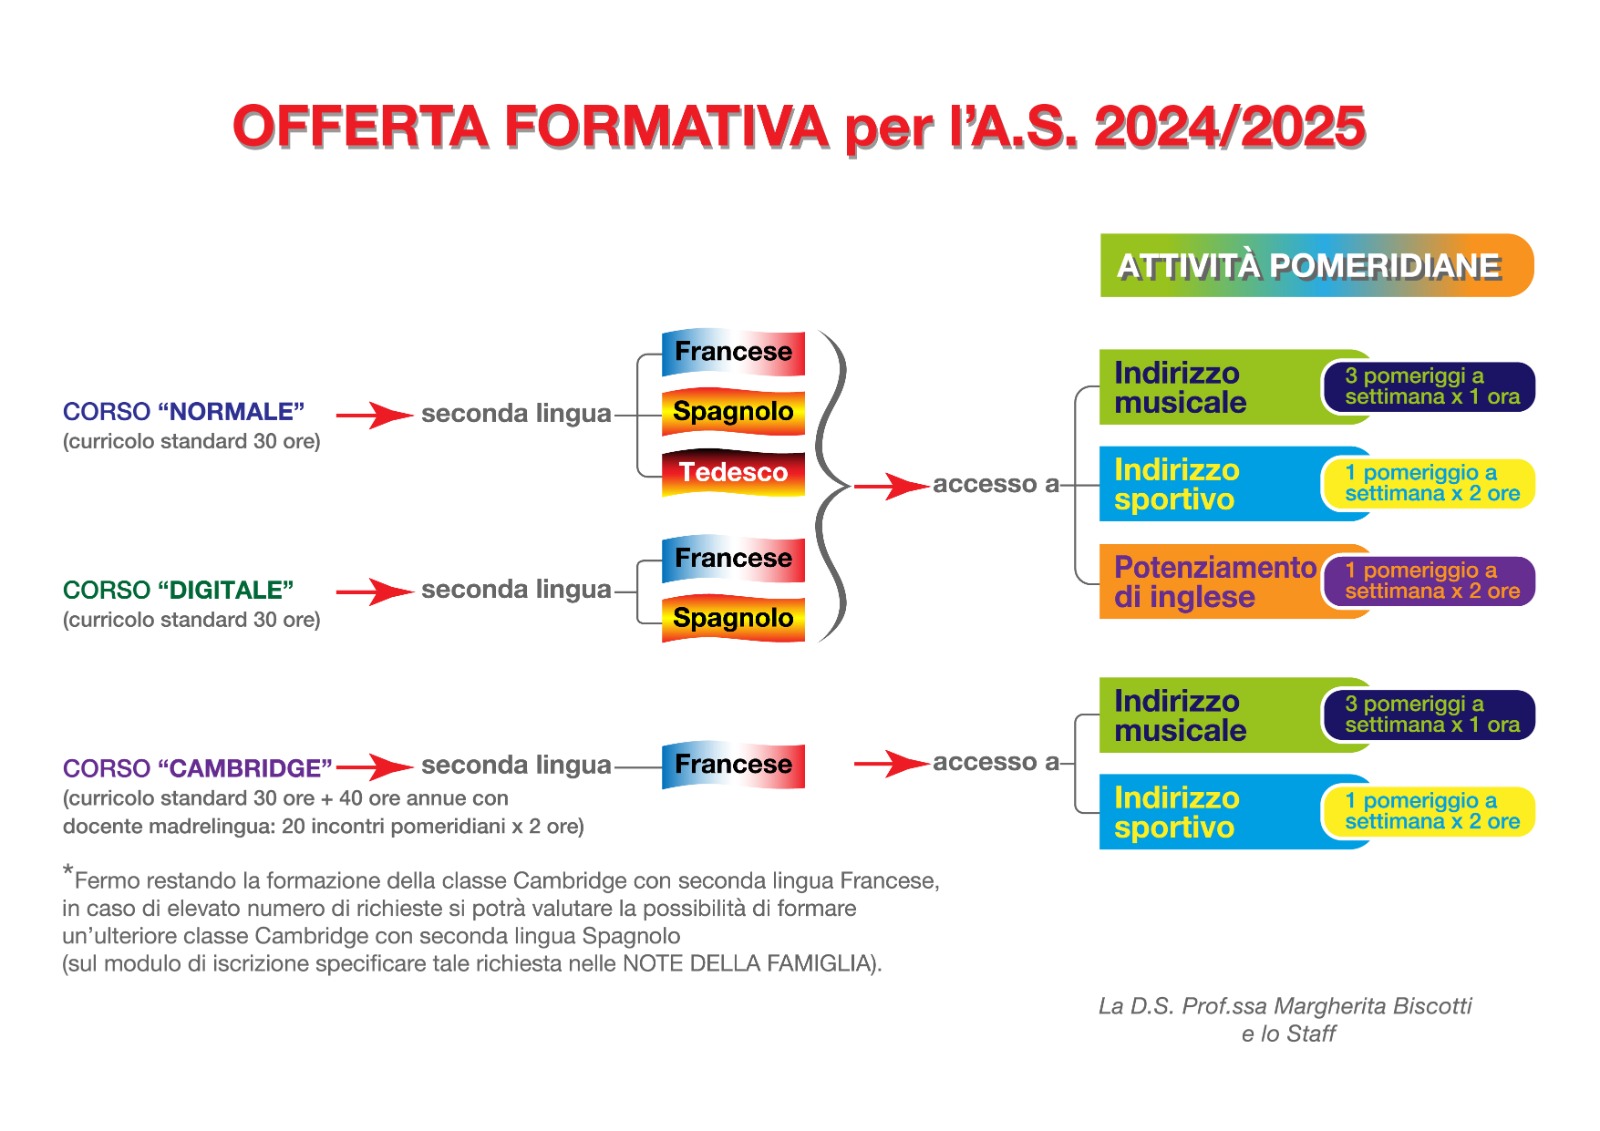 OFFERTA FORMATIVA PER L'ANNO SCOLASTICO 2024/2025